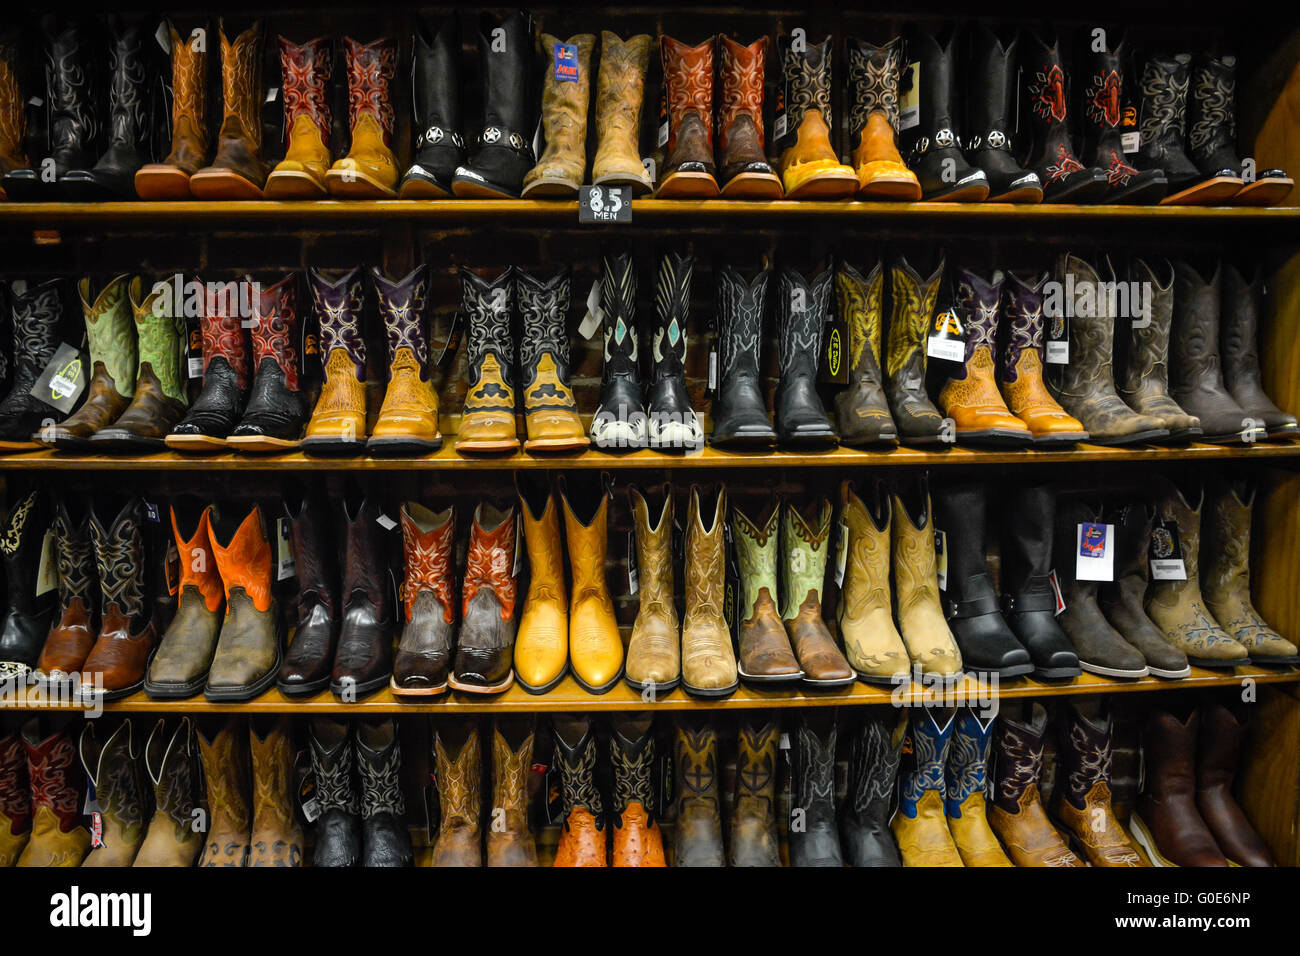 The Nashville Cowboy boot store has rows of unique Cowboy boots ...